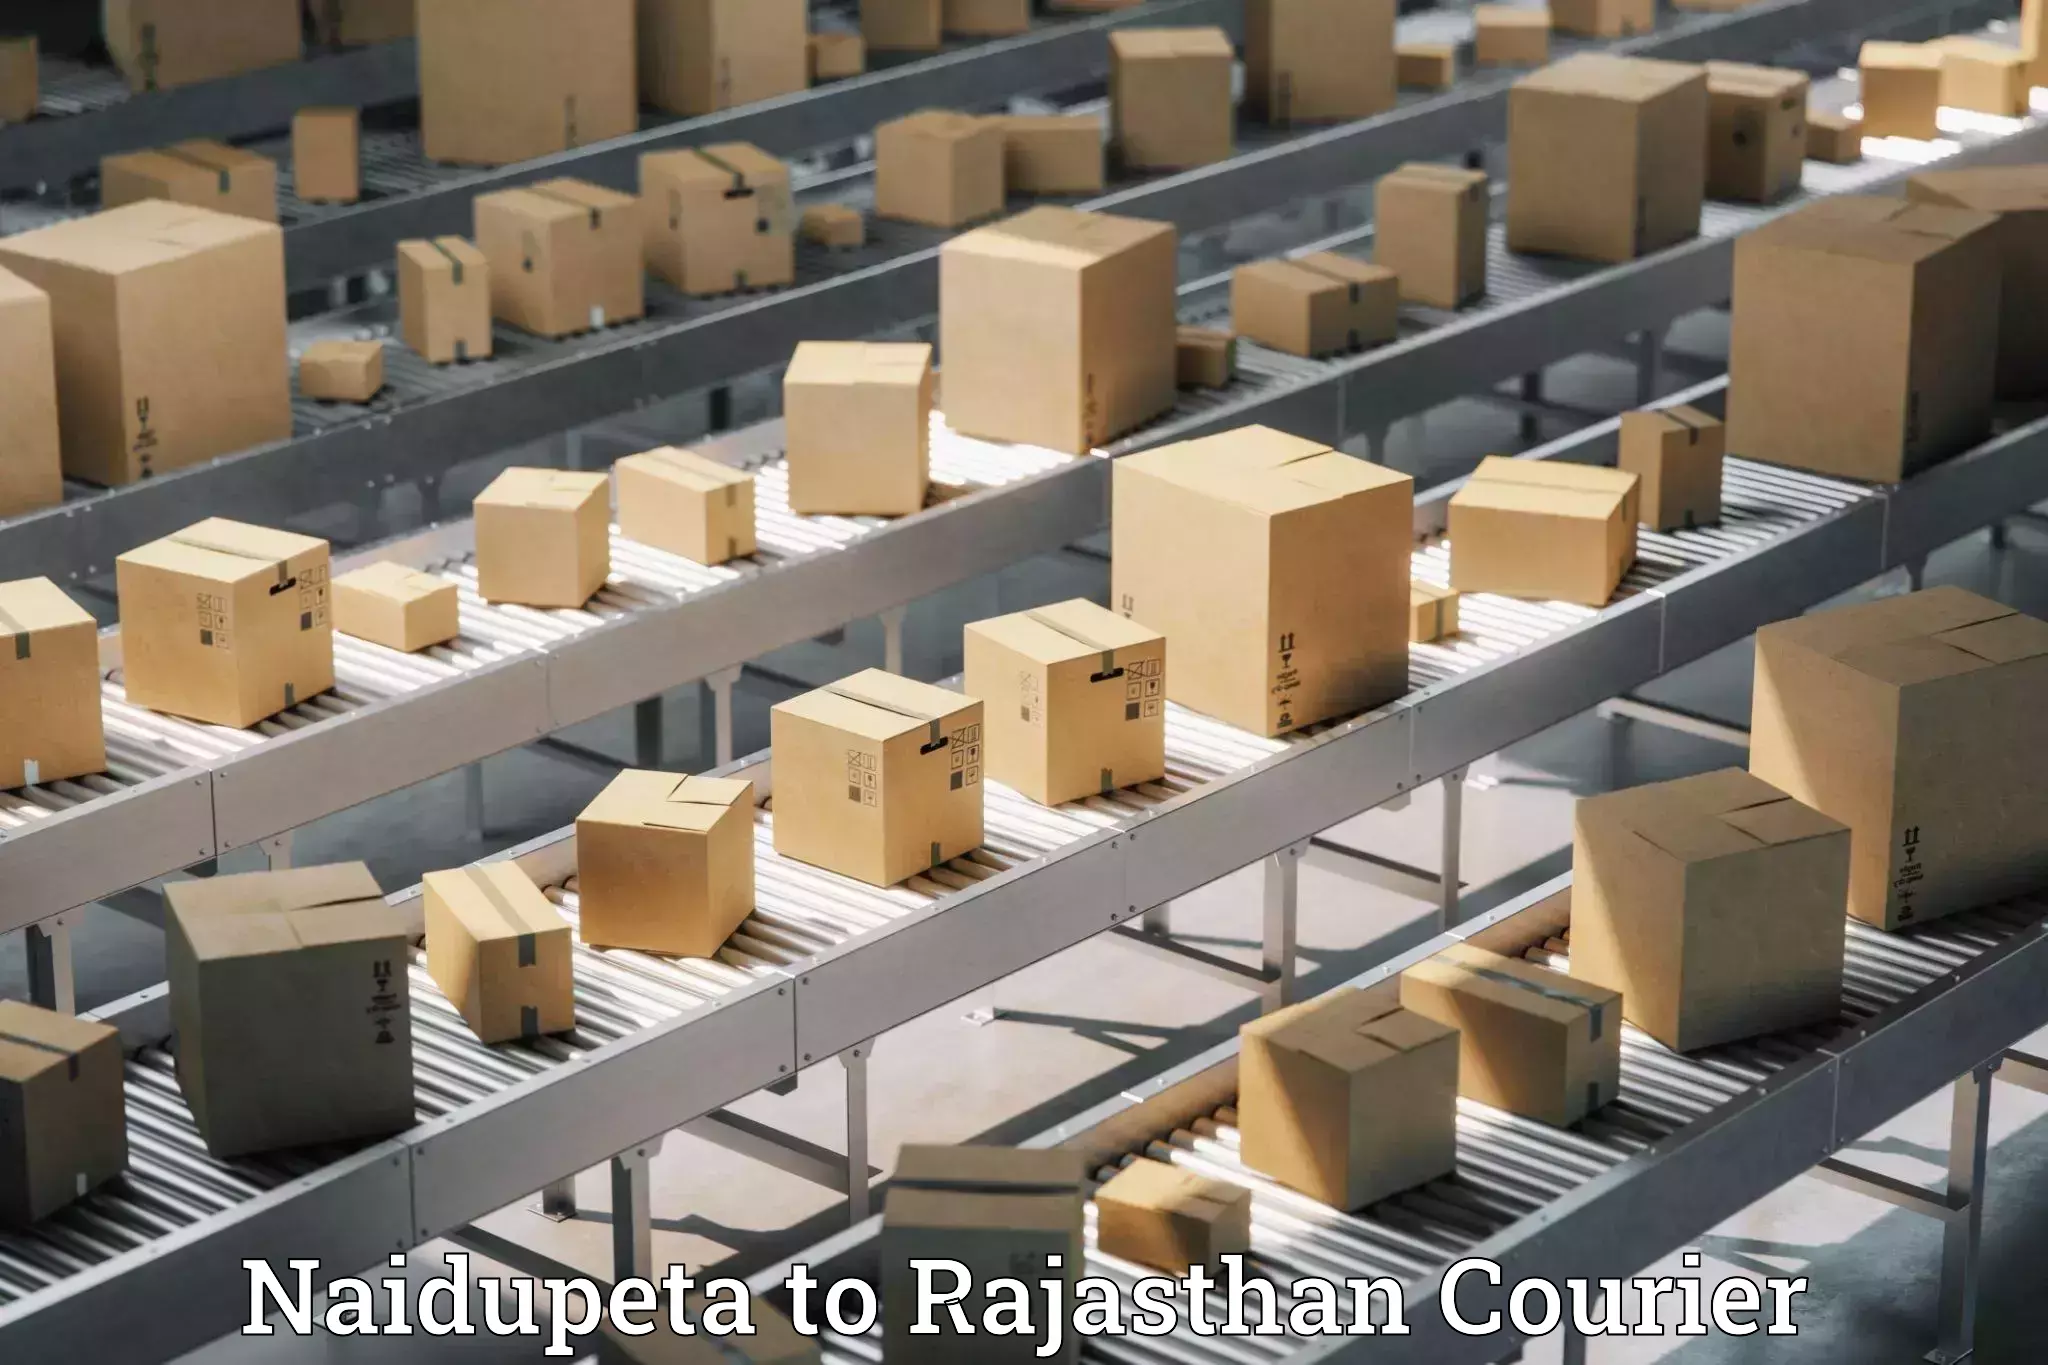 Quick booking process Naidupeta to Rajasthan